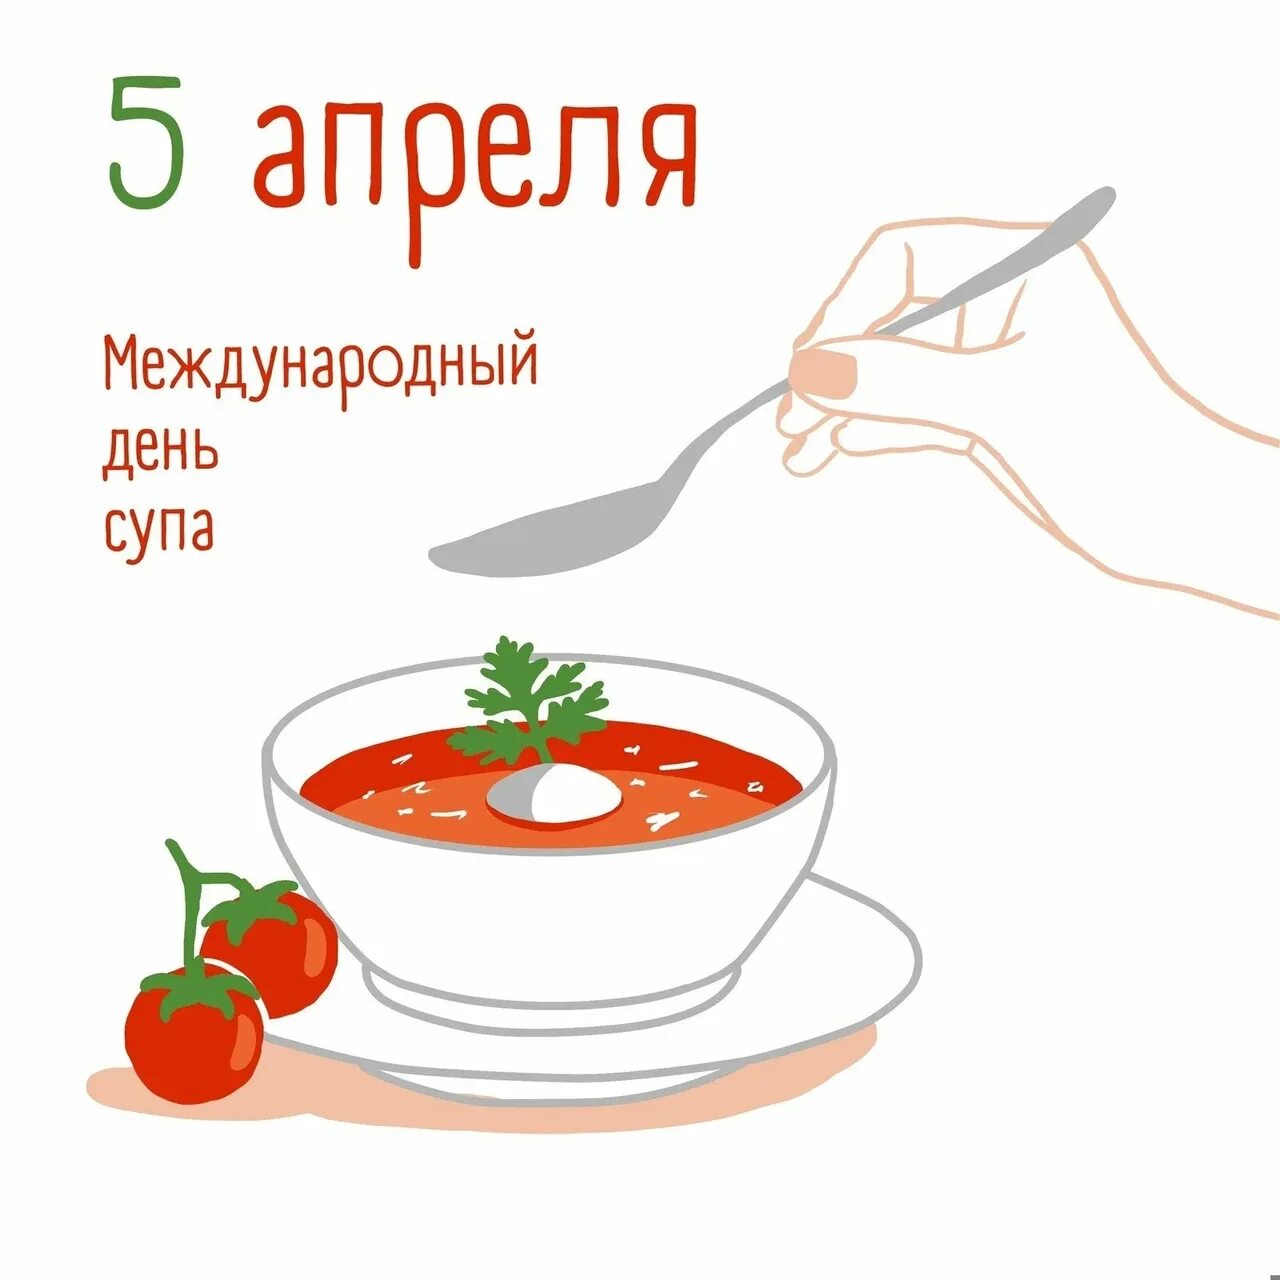 5 апреля какой праздник в россии. Международный день супп. Международный день супа. Международный день супа 5 апреля. Открытки Международный день супа 5 апреля.